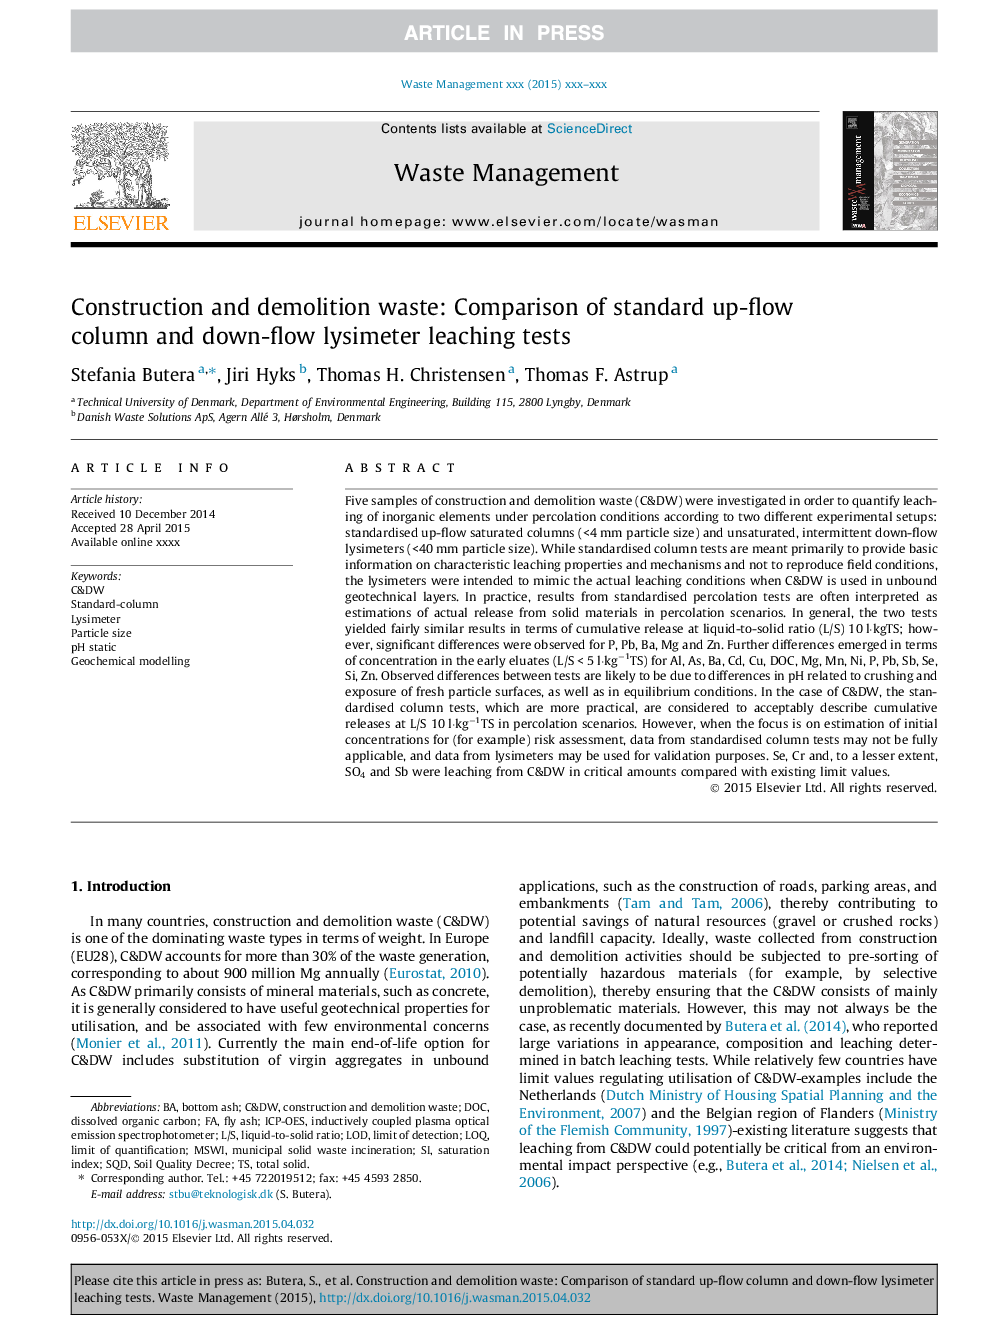 زباله های ساخت و ساز و تخریب: مقایسه مقادیر ستون جریان استاندارد و آزمون های لایسیمتر پایین جریان 